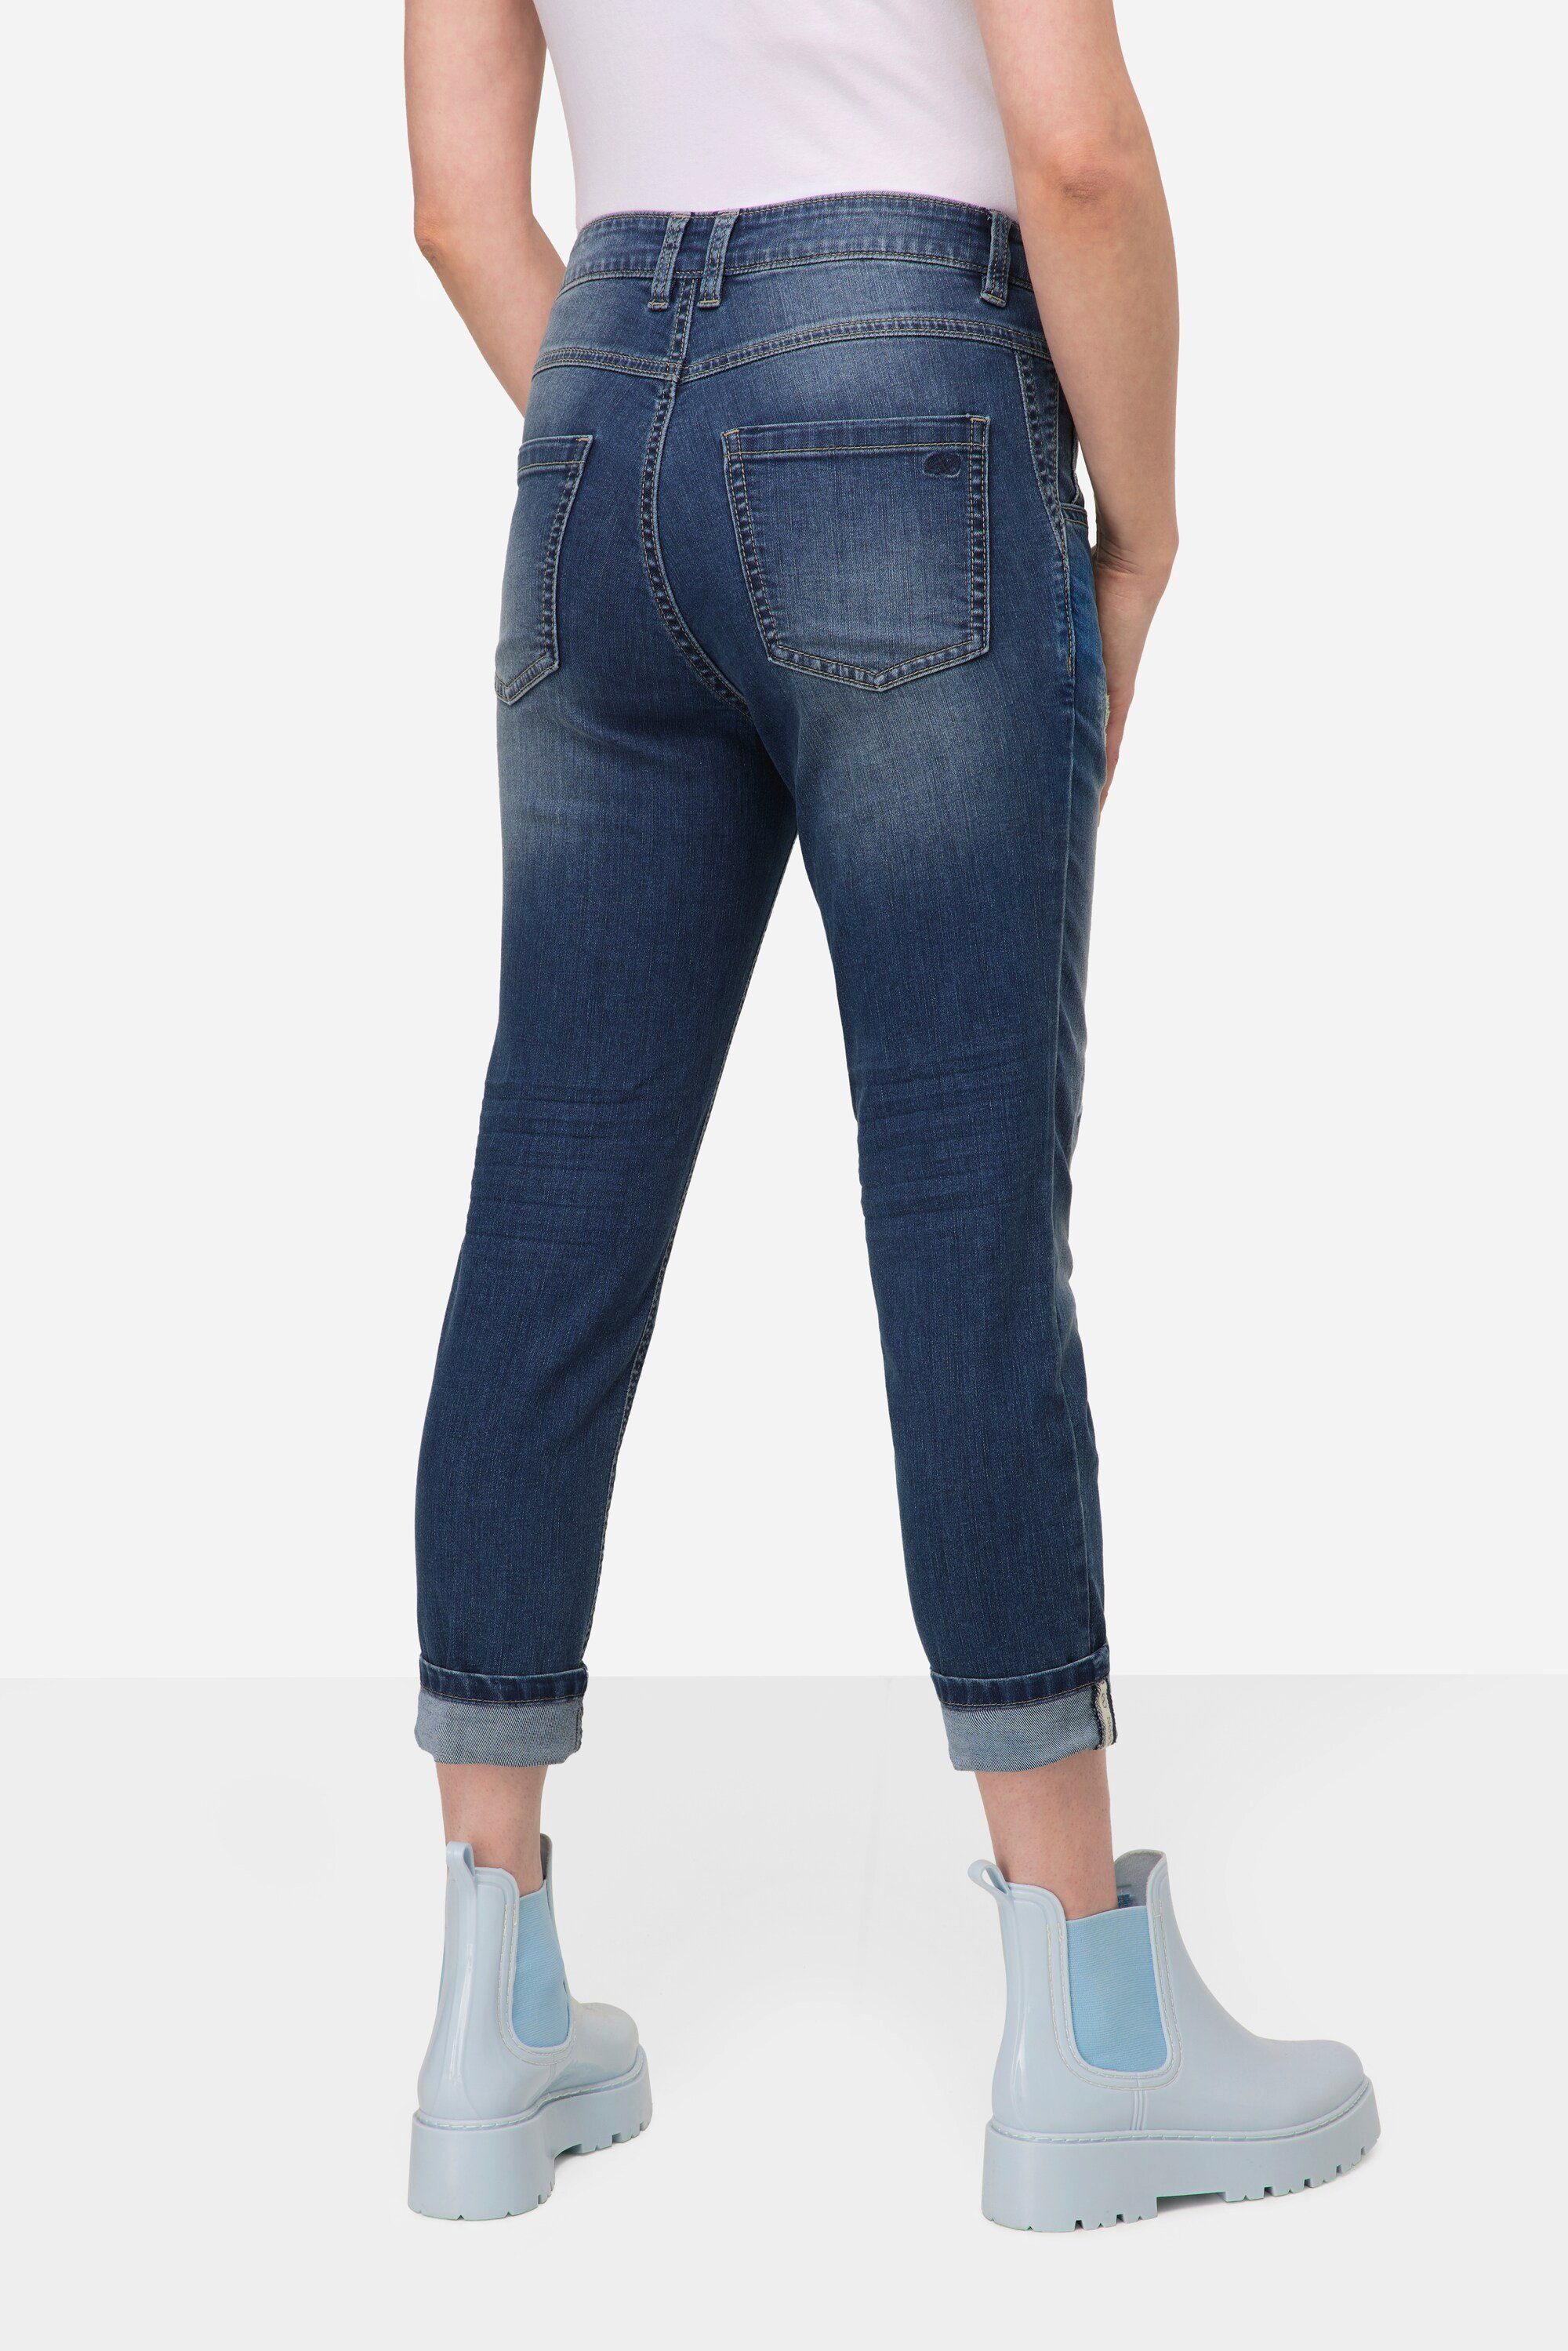 Laurasøn Regular-fit-Jeans 7/8-Jeans Destroy Slim Look 5-Pocket Fit